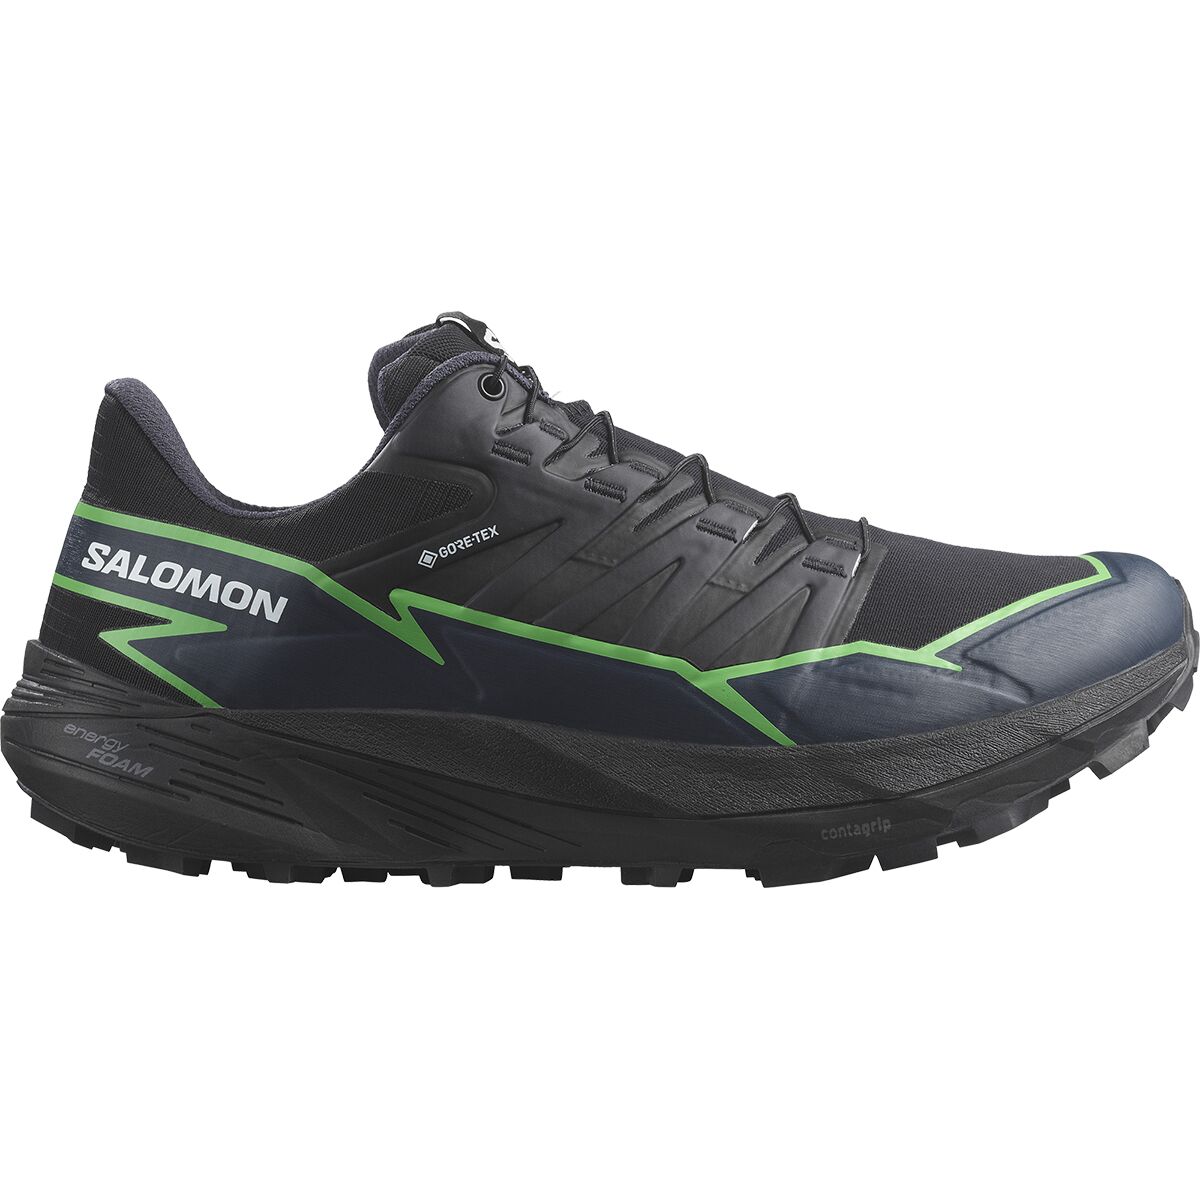 Salomon Thundercross GORE-TEX Trail Running Shoe - Men's Black/Green Gecko/Black, US 7.0/UK 6.5